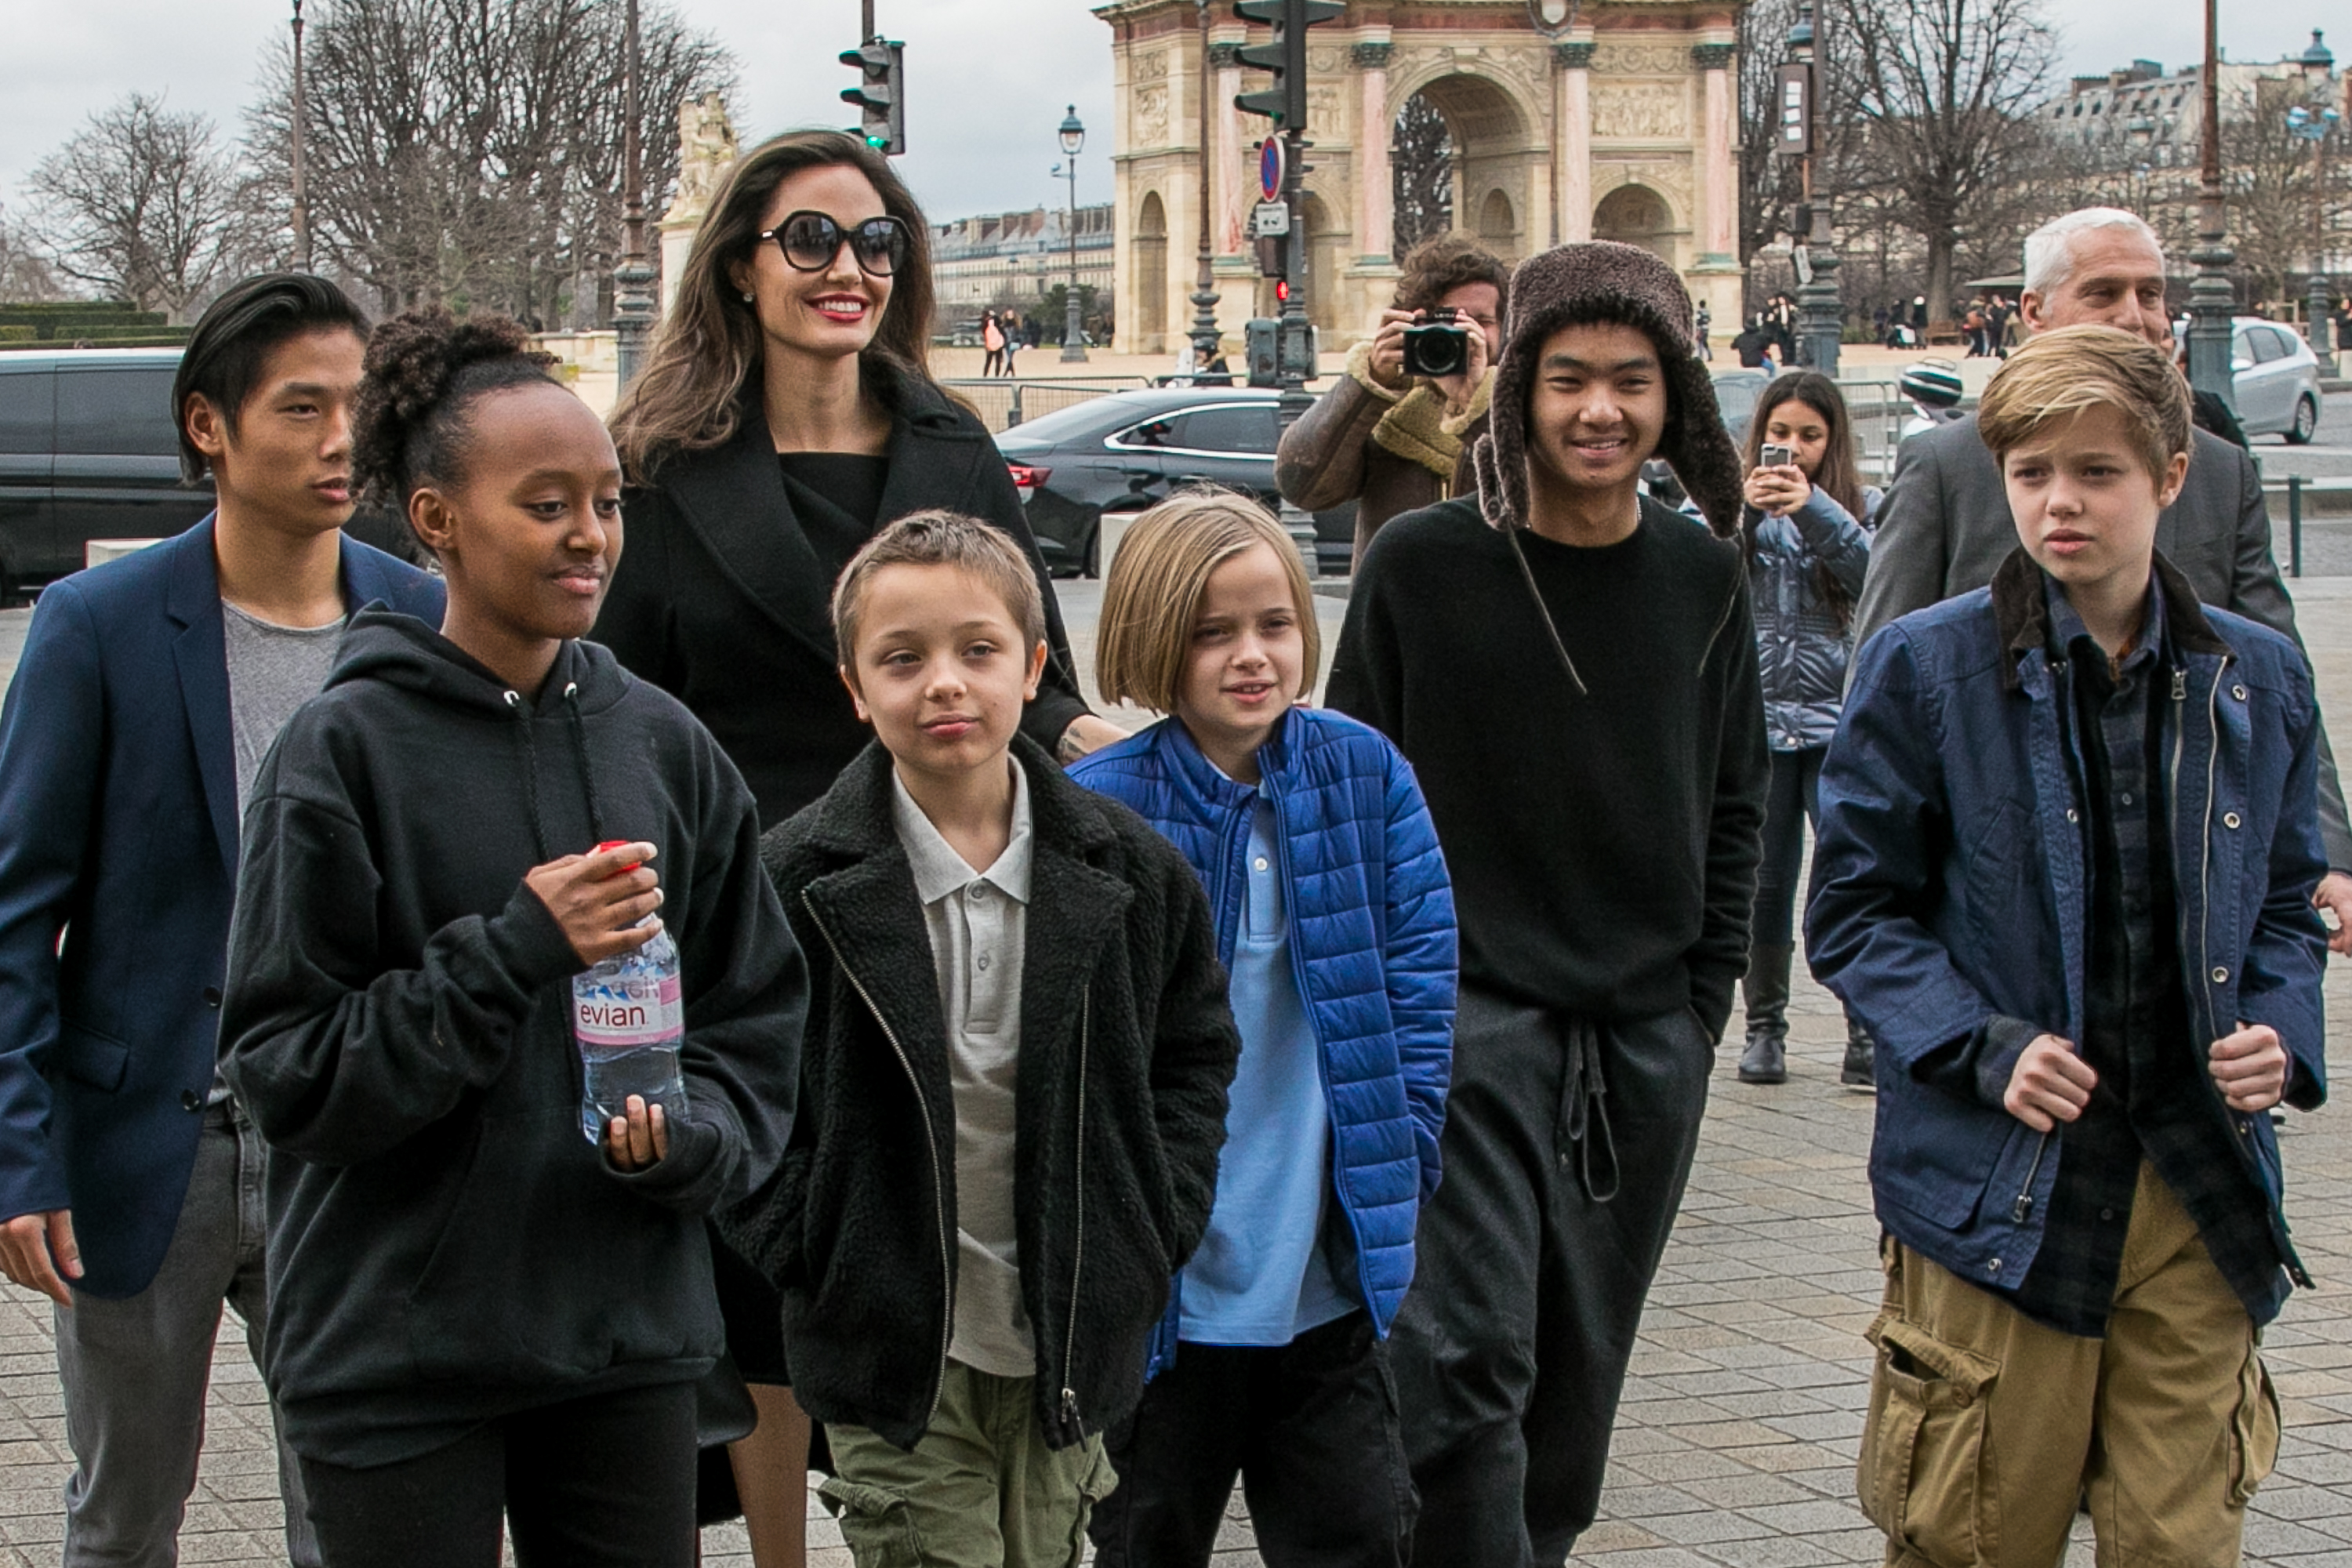 L'actrice Angelina Jolie et ses enfants Maddox Jolie-Pitt, Shiloh Jolie-Pitt, Vivienne Marcheline Jolie-Pitt, Knox Leon Jolie-Pitt, Zahara Jolie-Pitt et Pax Jolie-Pitt sont vus arrivant au musée du Louvre le 30 janvier 2018 à Paris, France. | Source : Getty Images